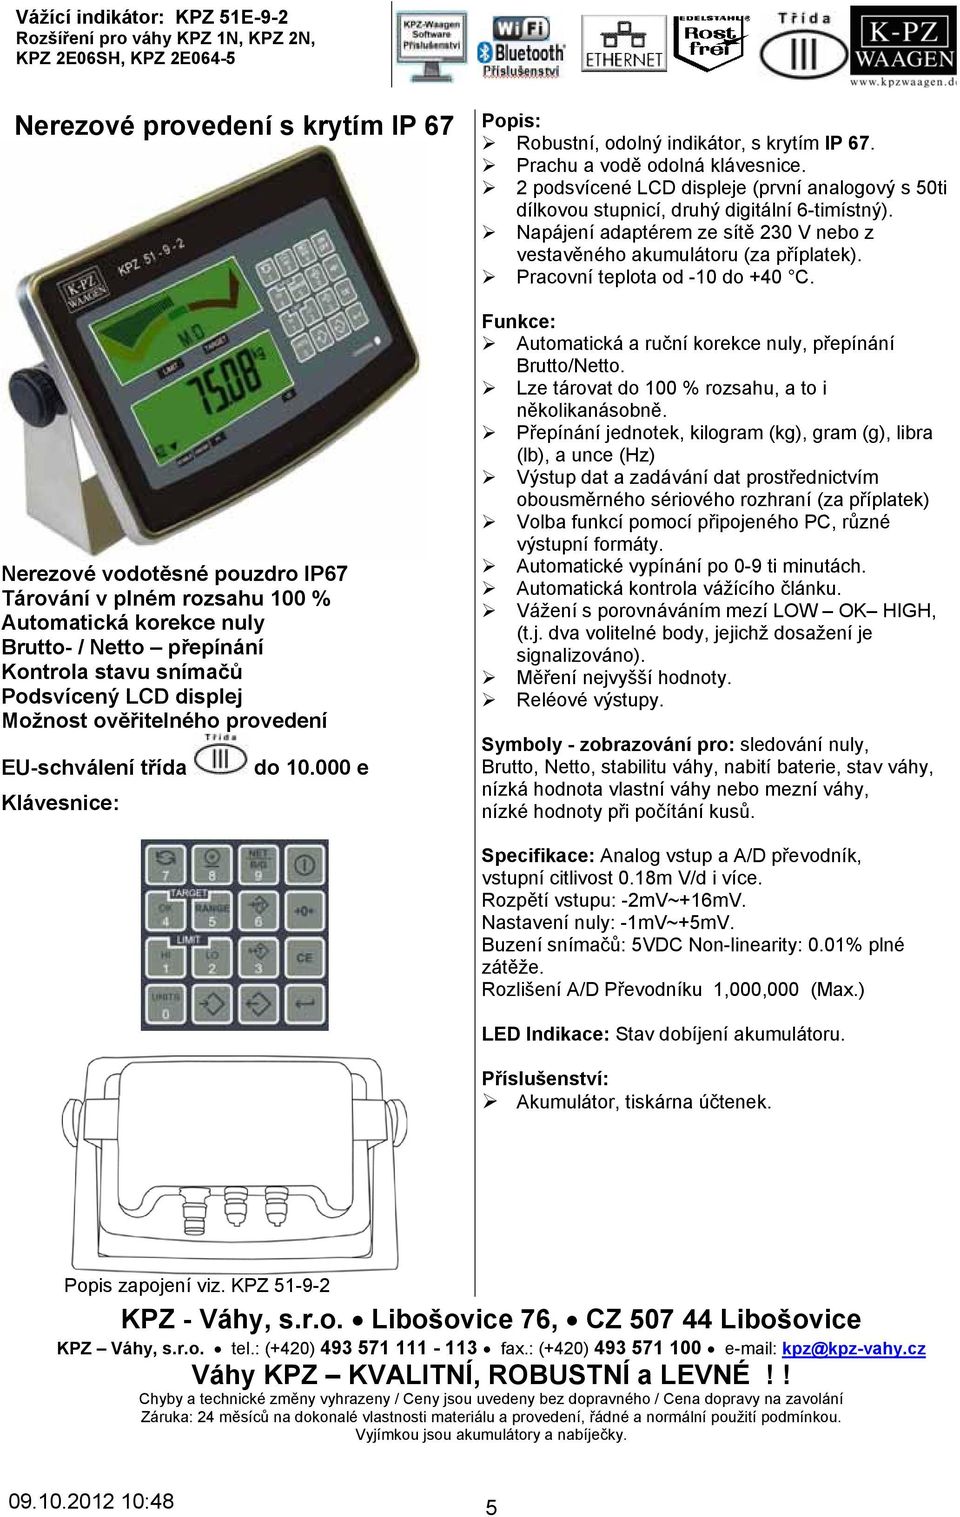 000 e Popis: Robustní, odolný indikátor, s krytím IP 67. Prachu a vodě odolná klávesnice. 2 podsvícené LCD displeje (první analogový s 50ti dílkovou stupnicí, druhý digitální 6-timístný).